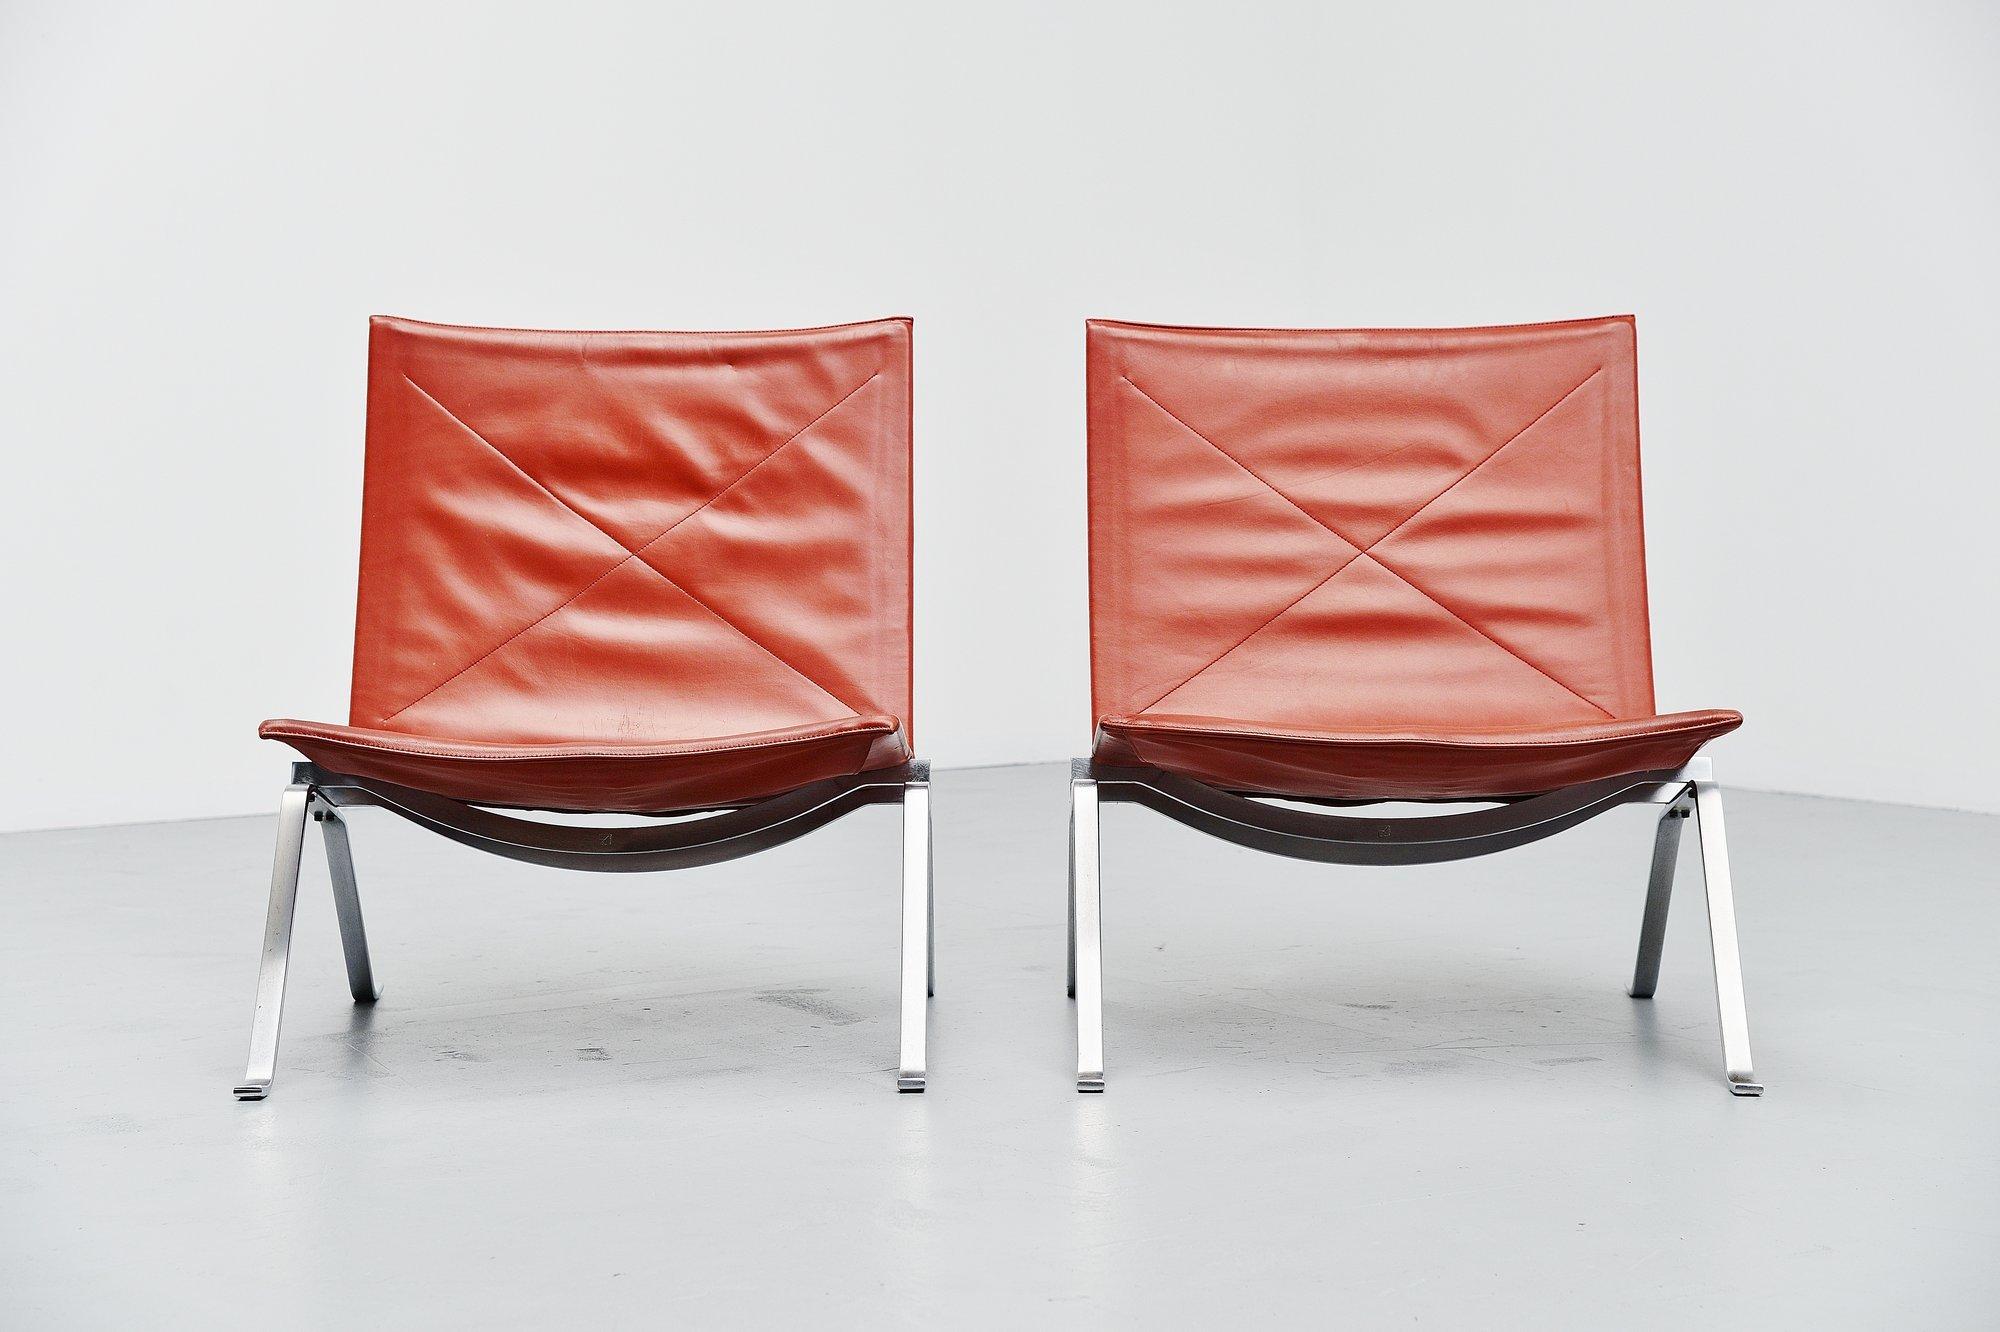 Mid-20th Century Poul Kjaerholm PK22 Chairs E Kold Christensen, Denmark, 1956